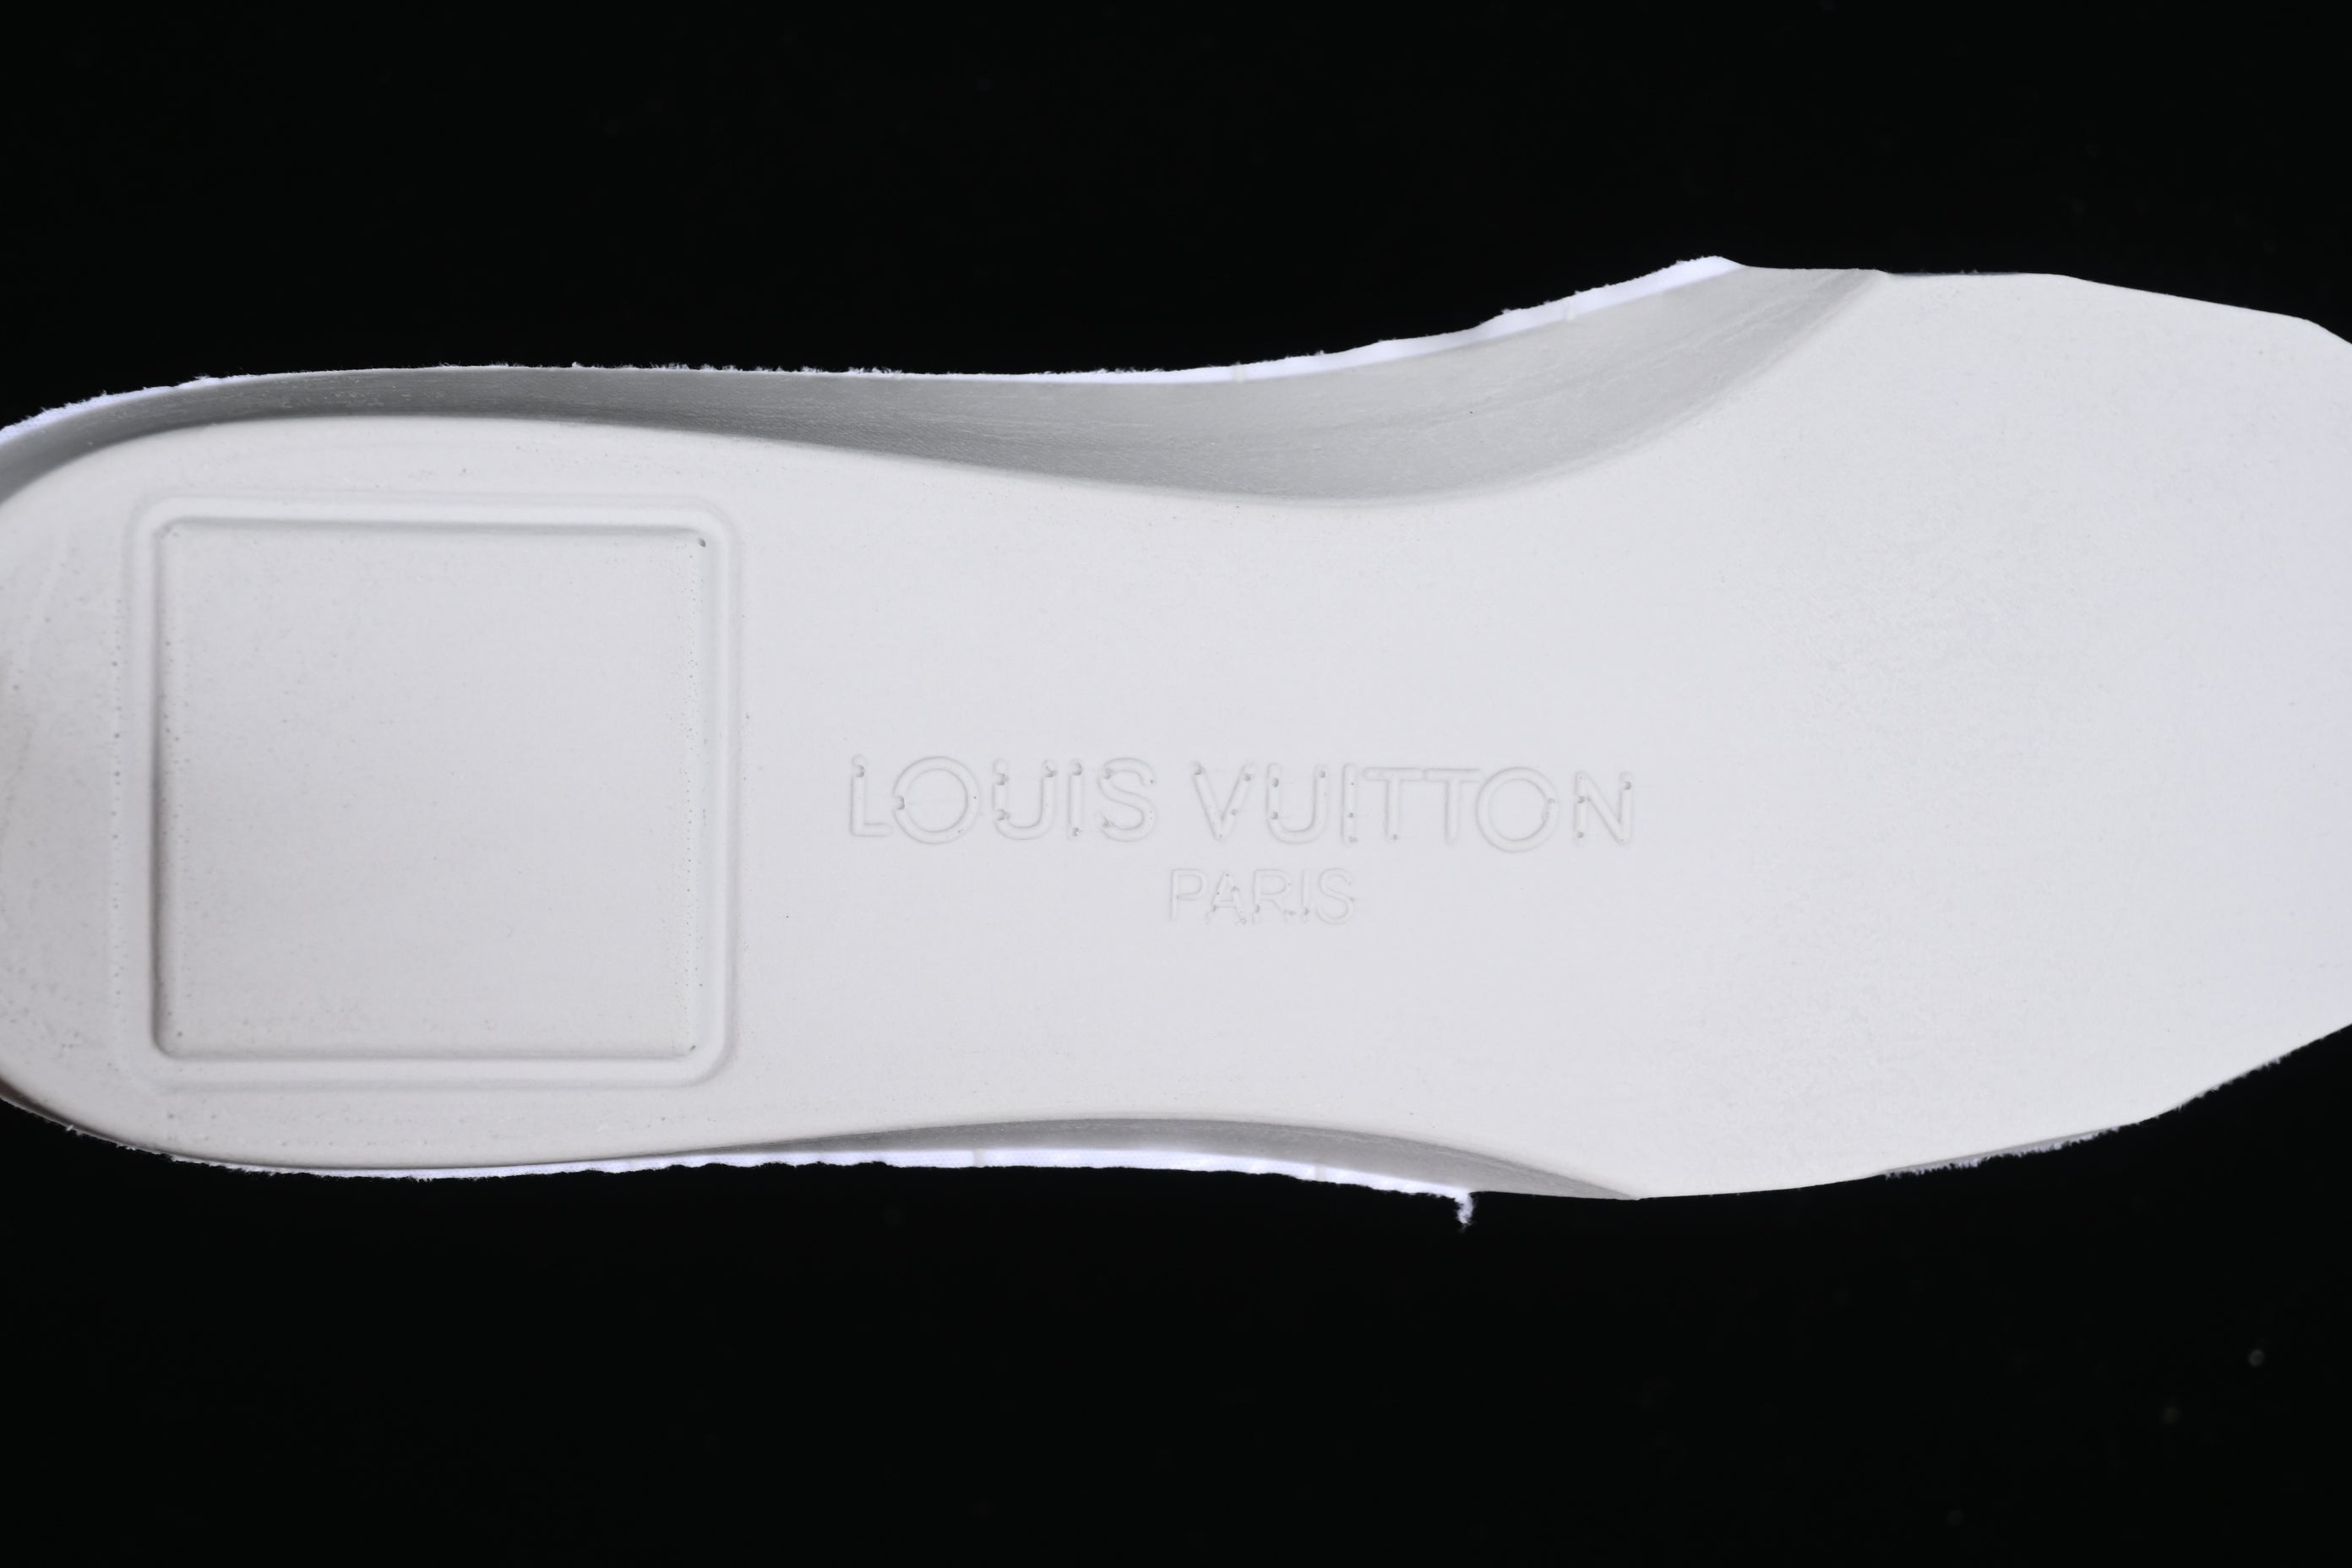 Louis Vuitton Trainer Maxi - White